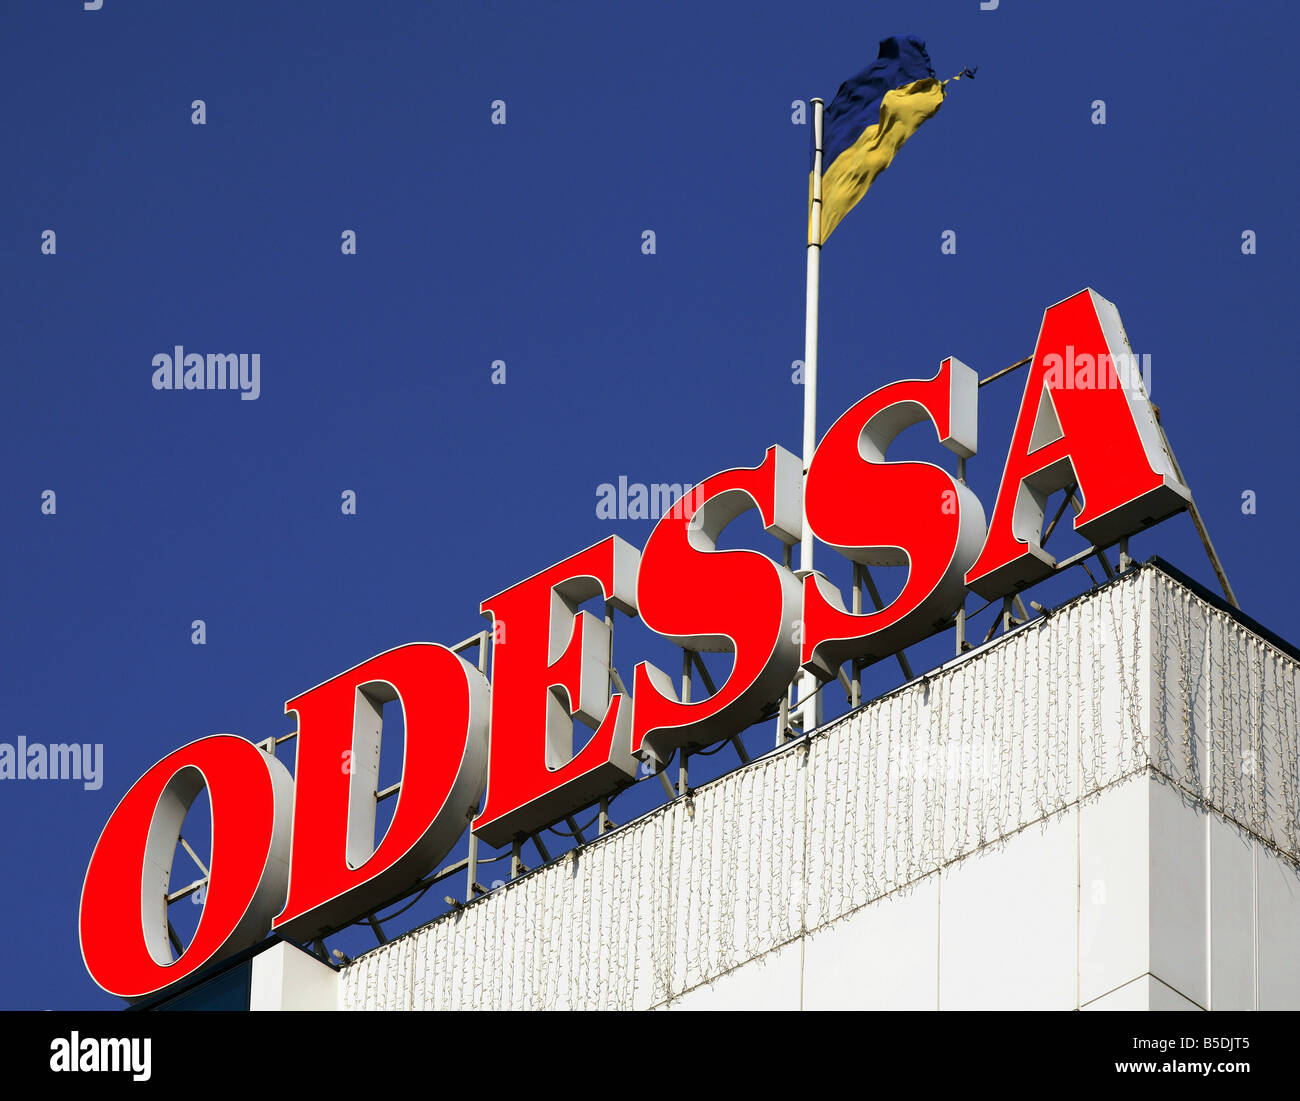 Ukrainische Nationalflagge und die Schrift - Odessa- Stockfoto